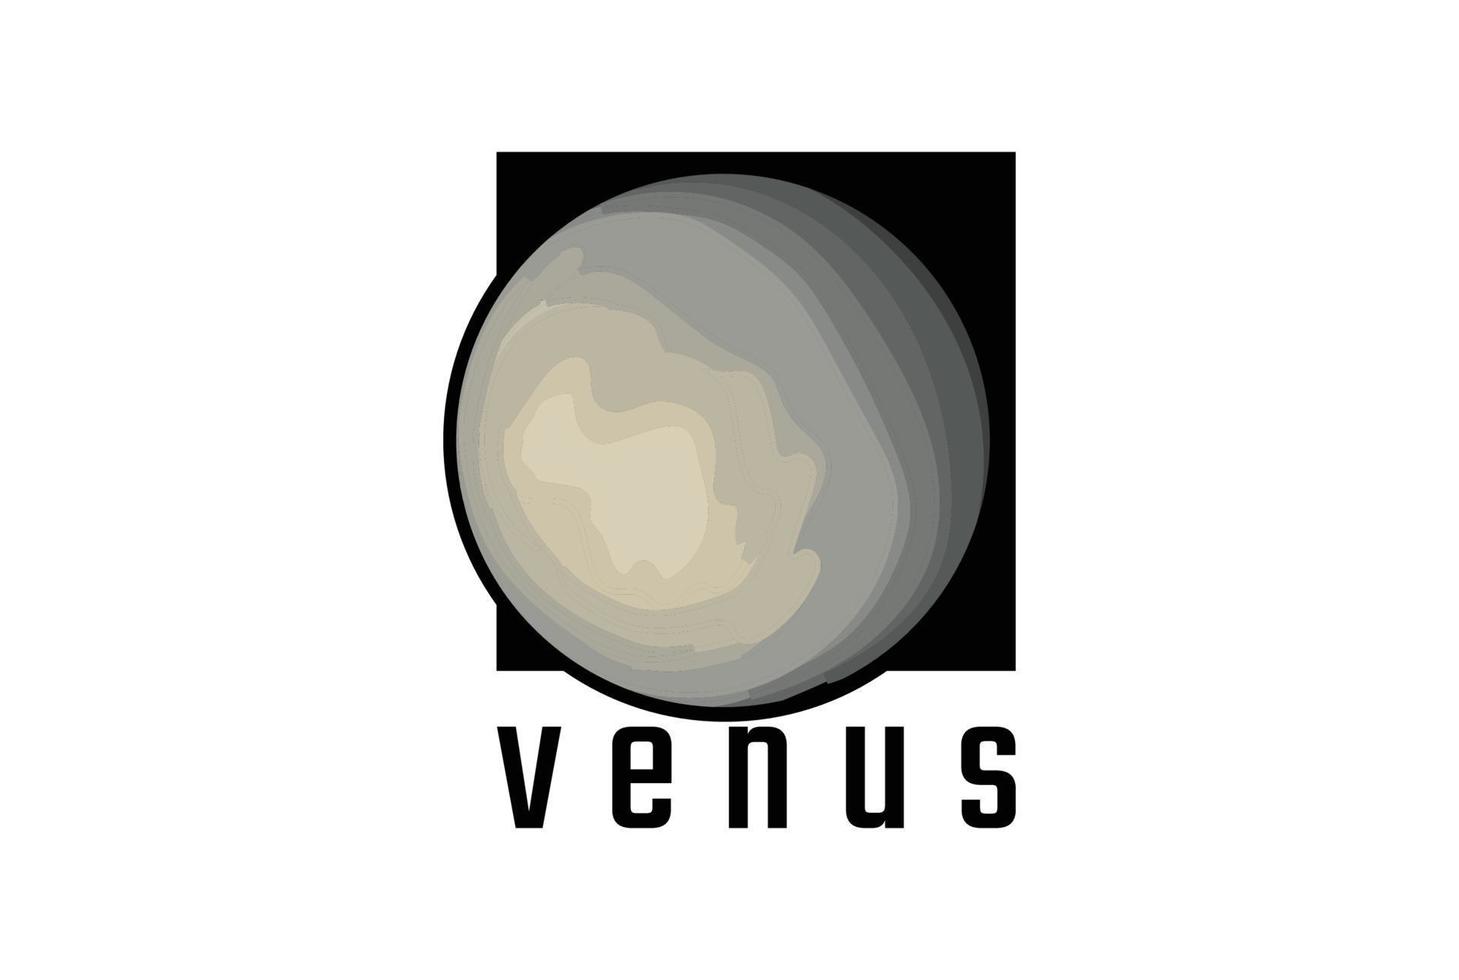 vintage retro venus planet symbol für weltraumwissenschaft logo design vektor